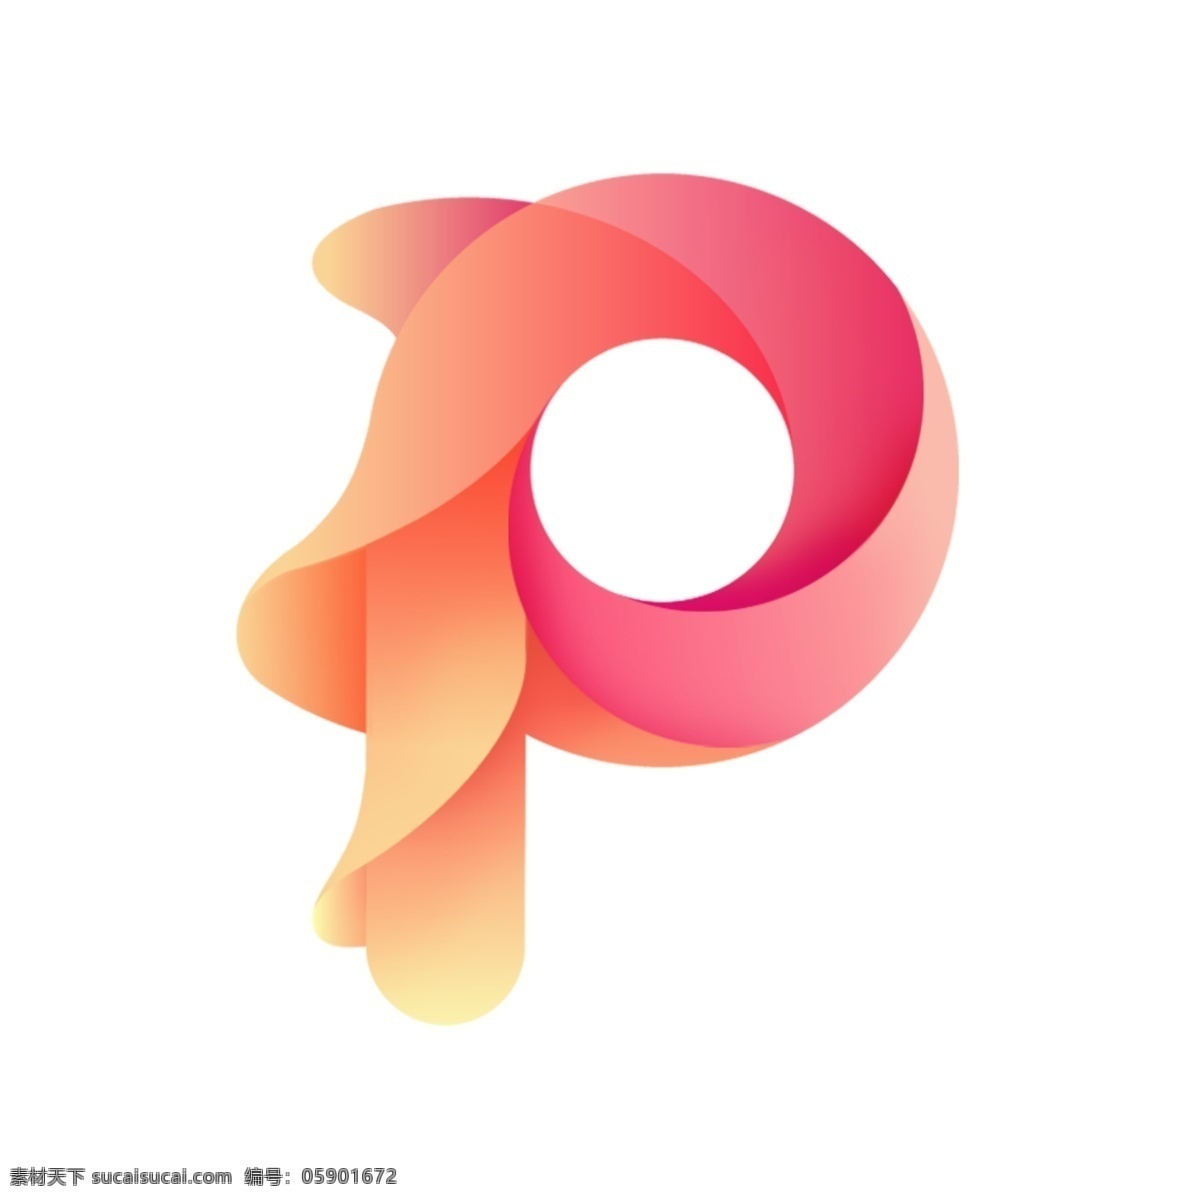 字母 p 渐变 多层次 icon 图标 字母p图标 app 渐变字母图标 扁平化 粉色 系列